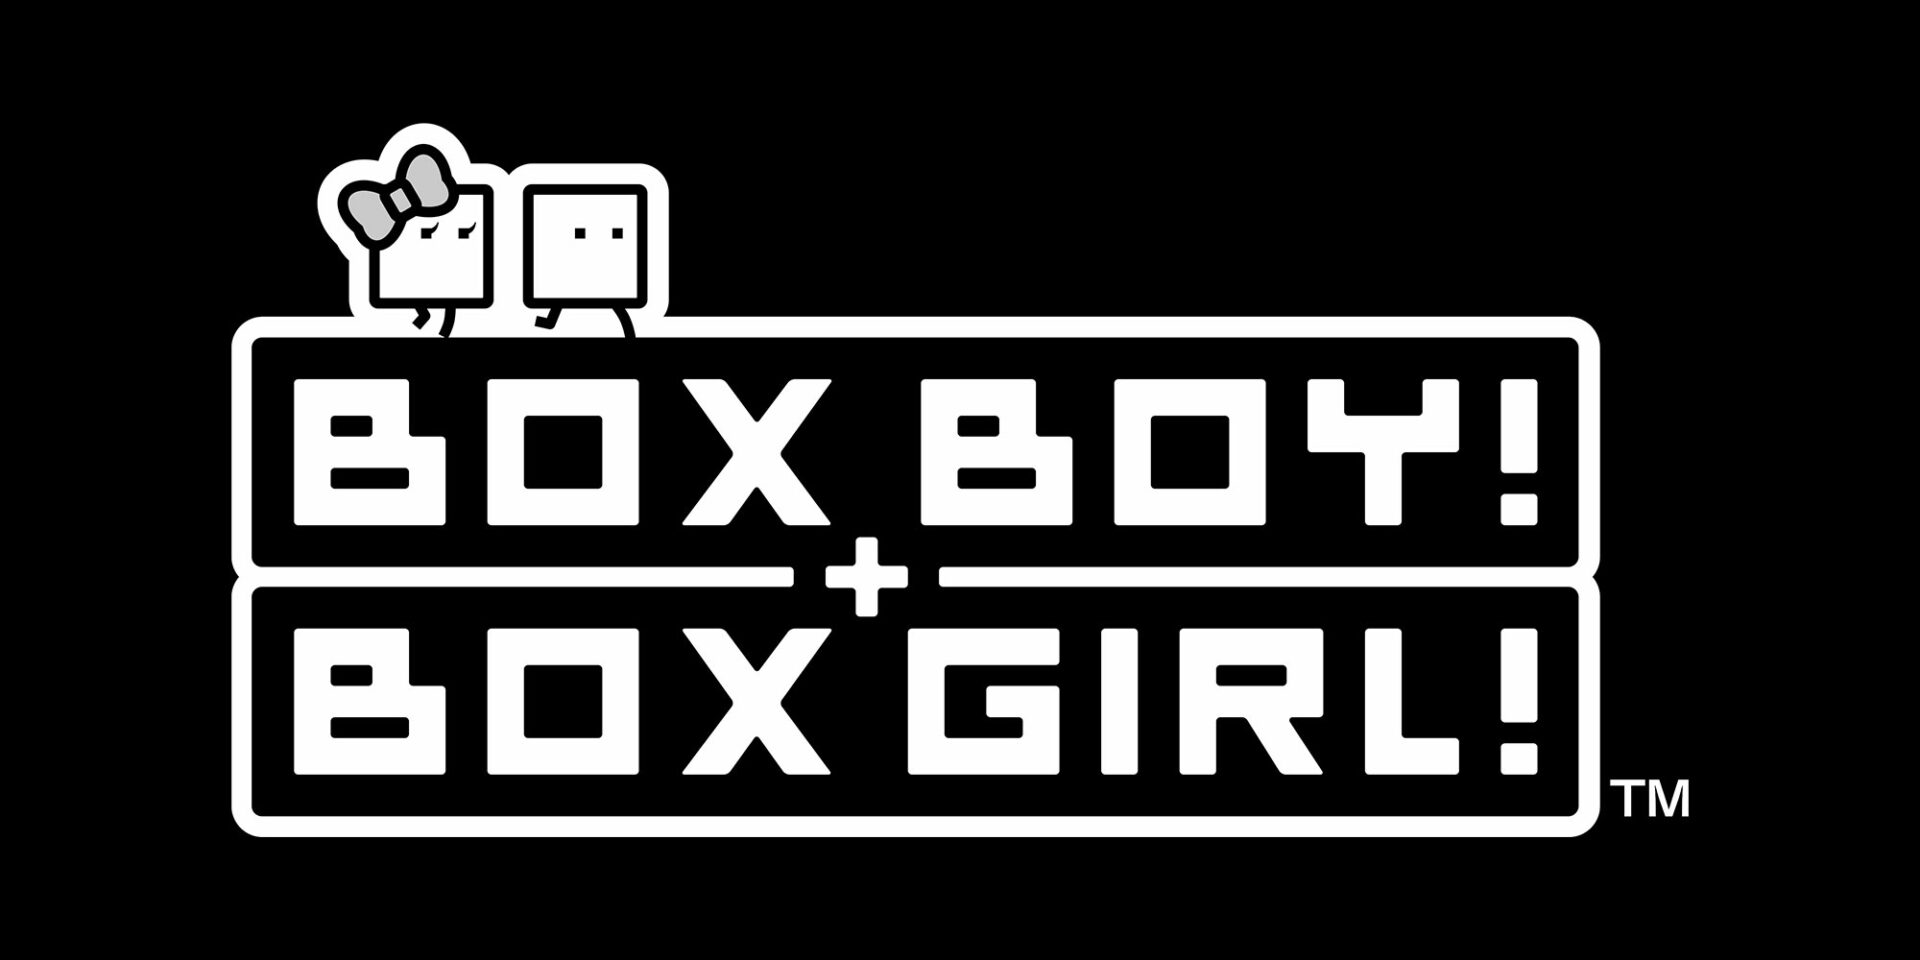 Nuovo trailer e tutte le informazioni necessarie su BOXBOY! + BOXGIRL!